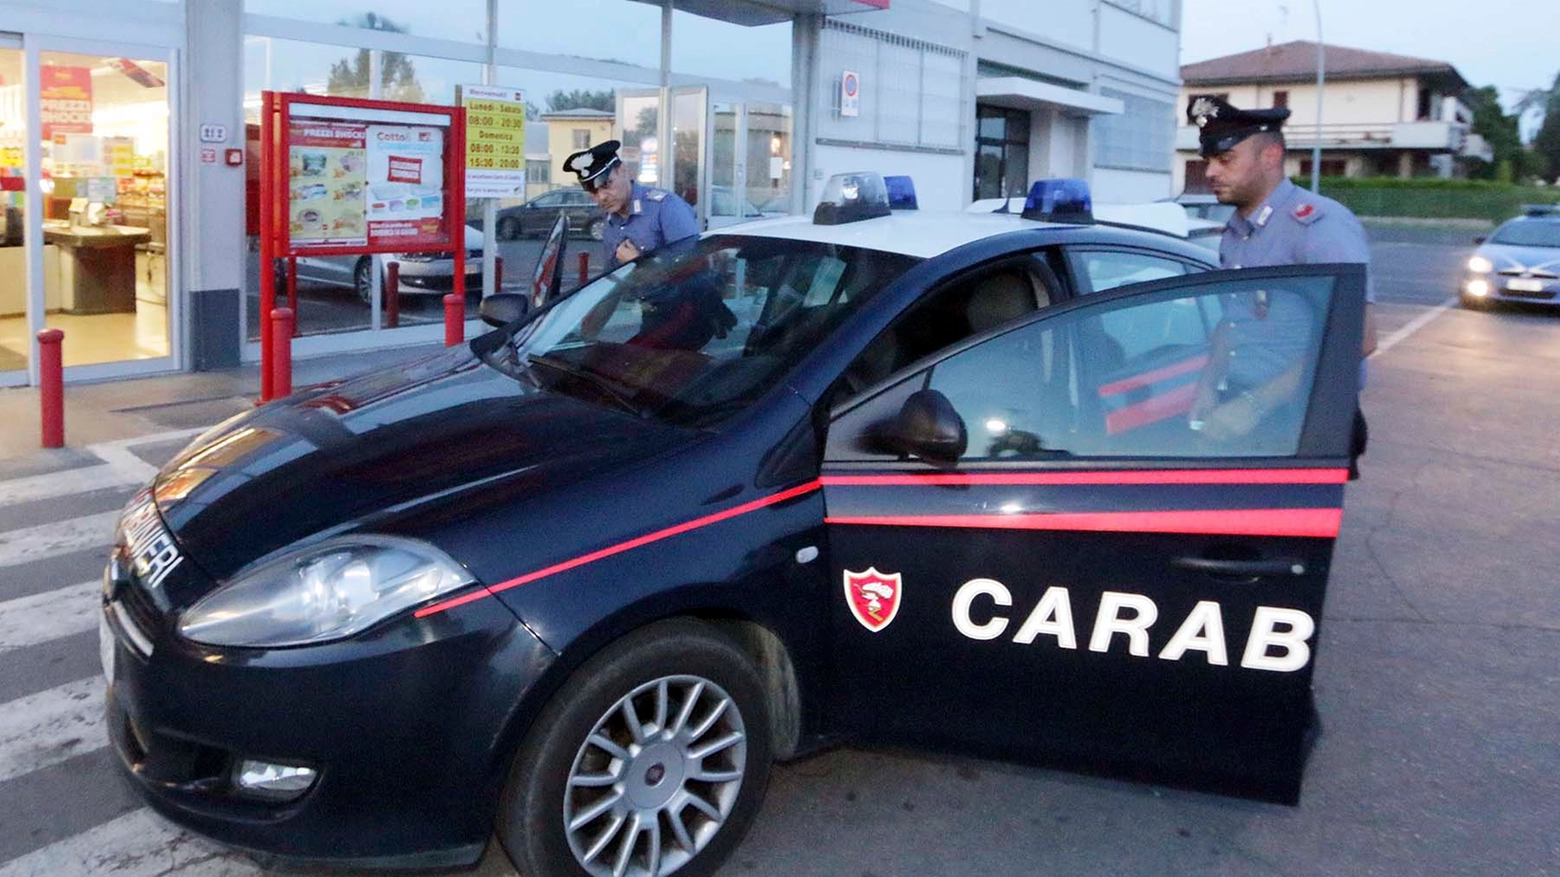 Le indagini sono state compiute dai carabinieri